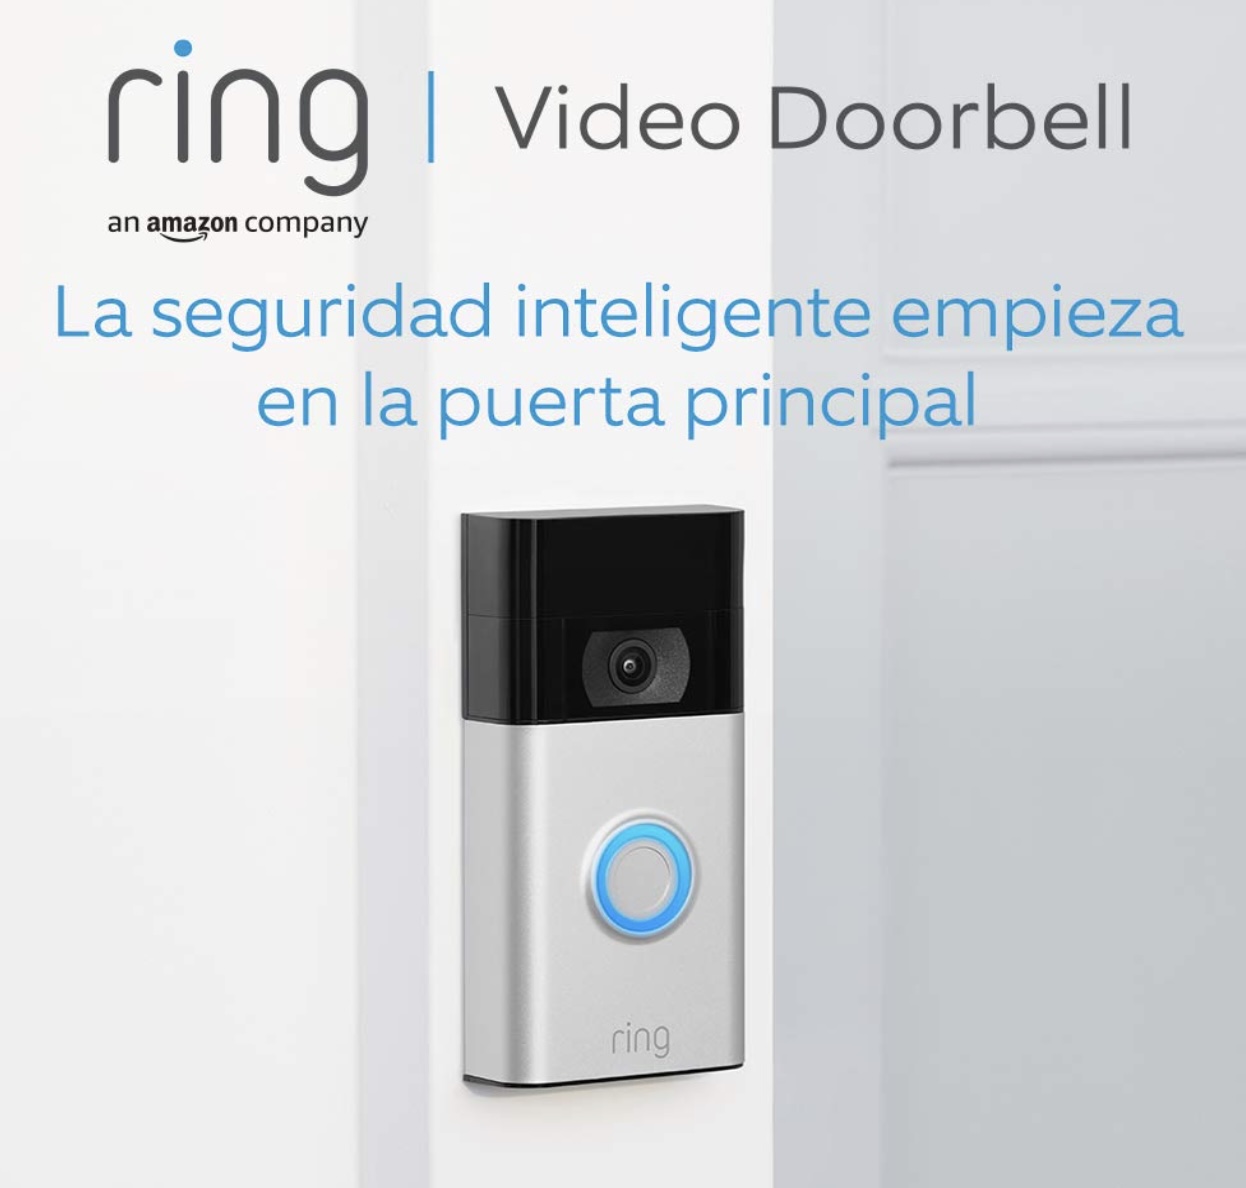 ring video doorbell 2 generacion